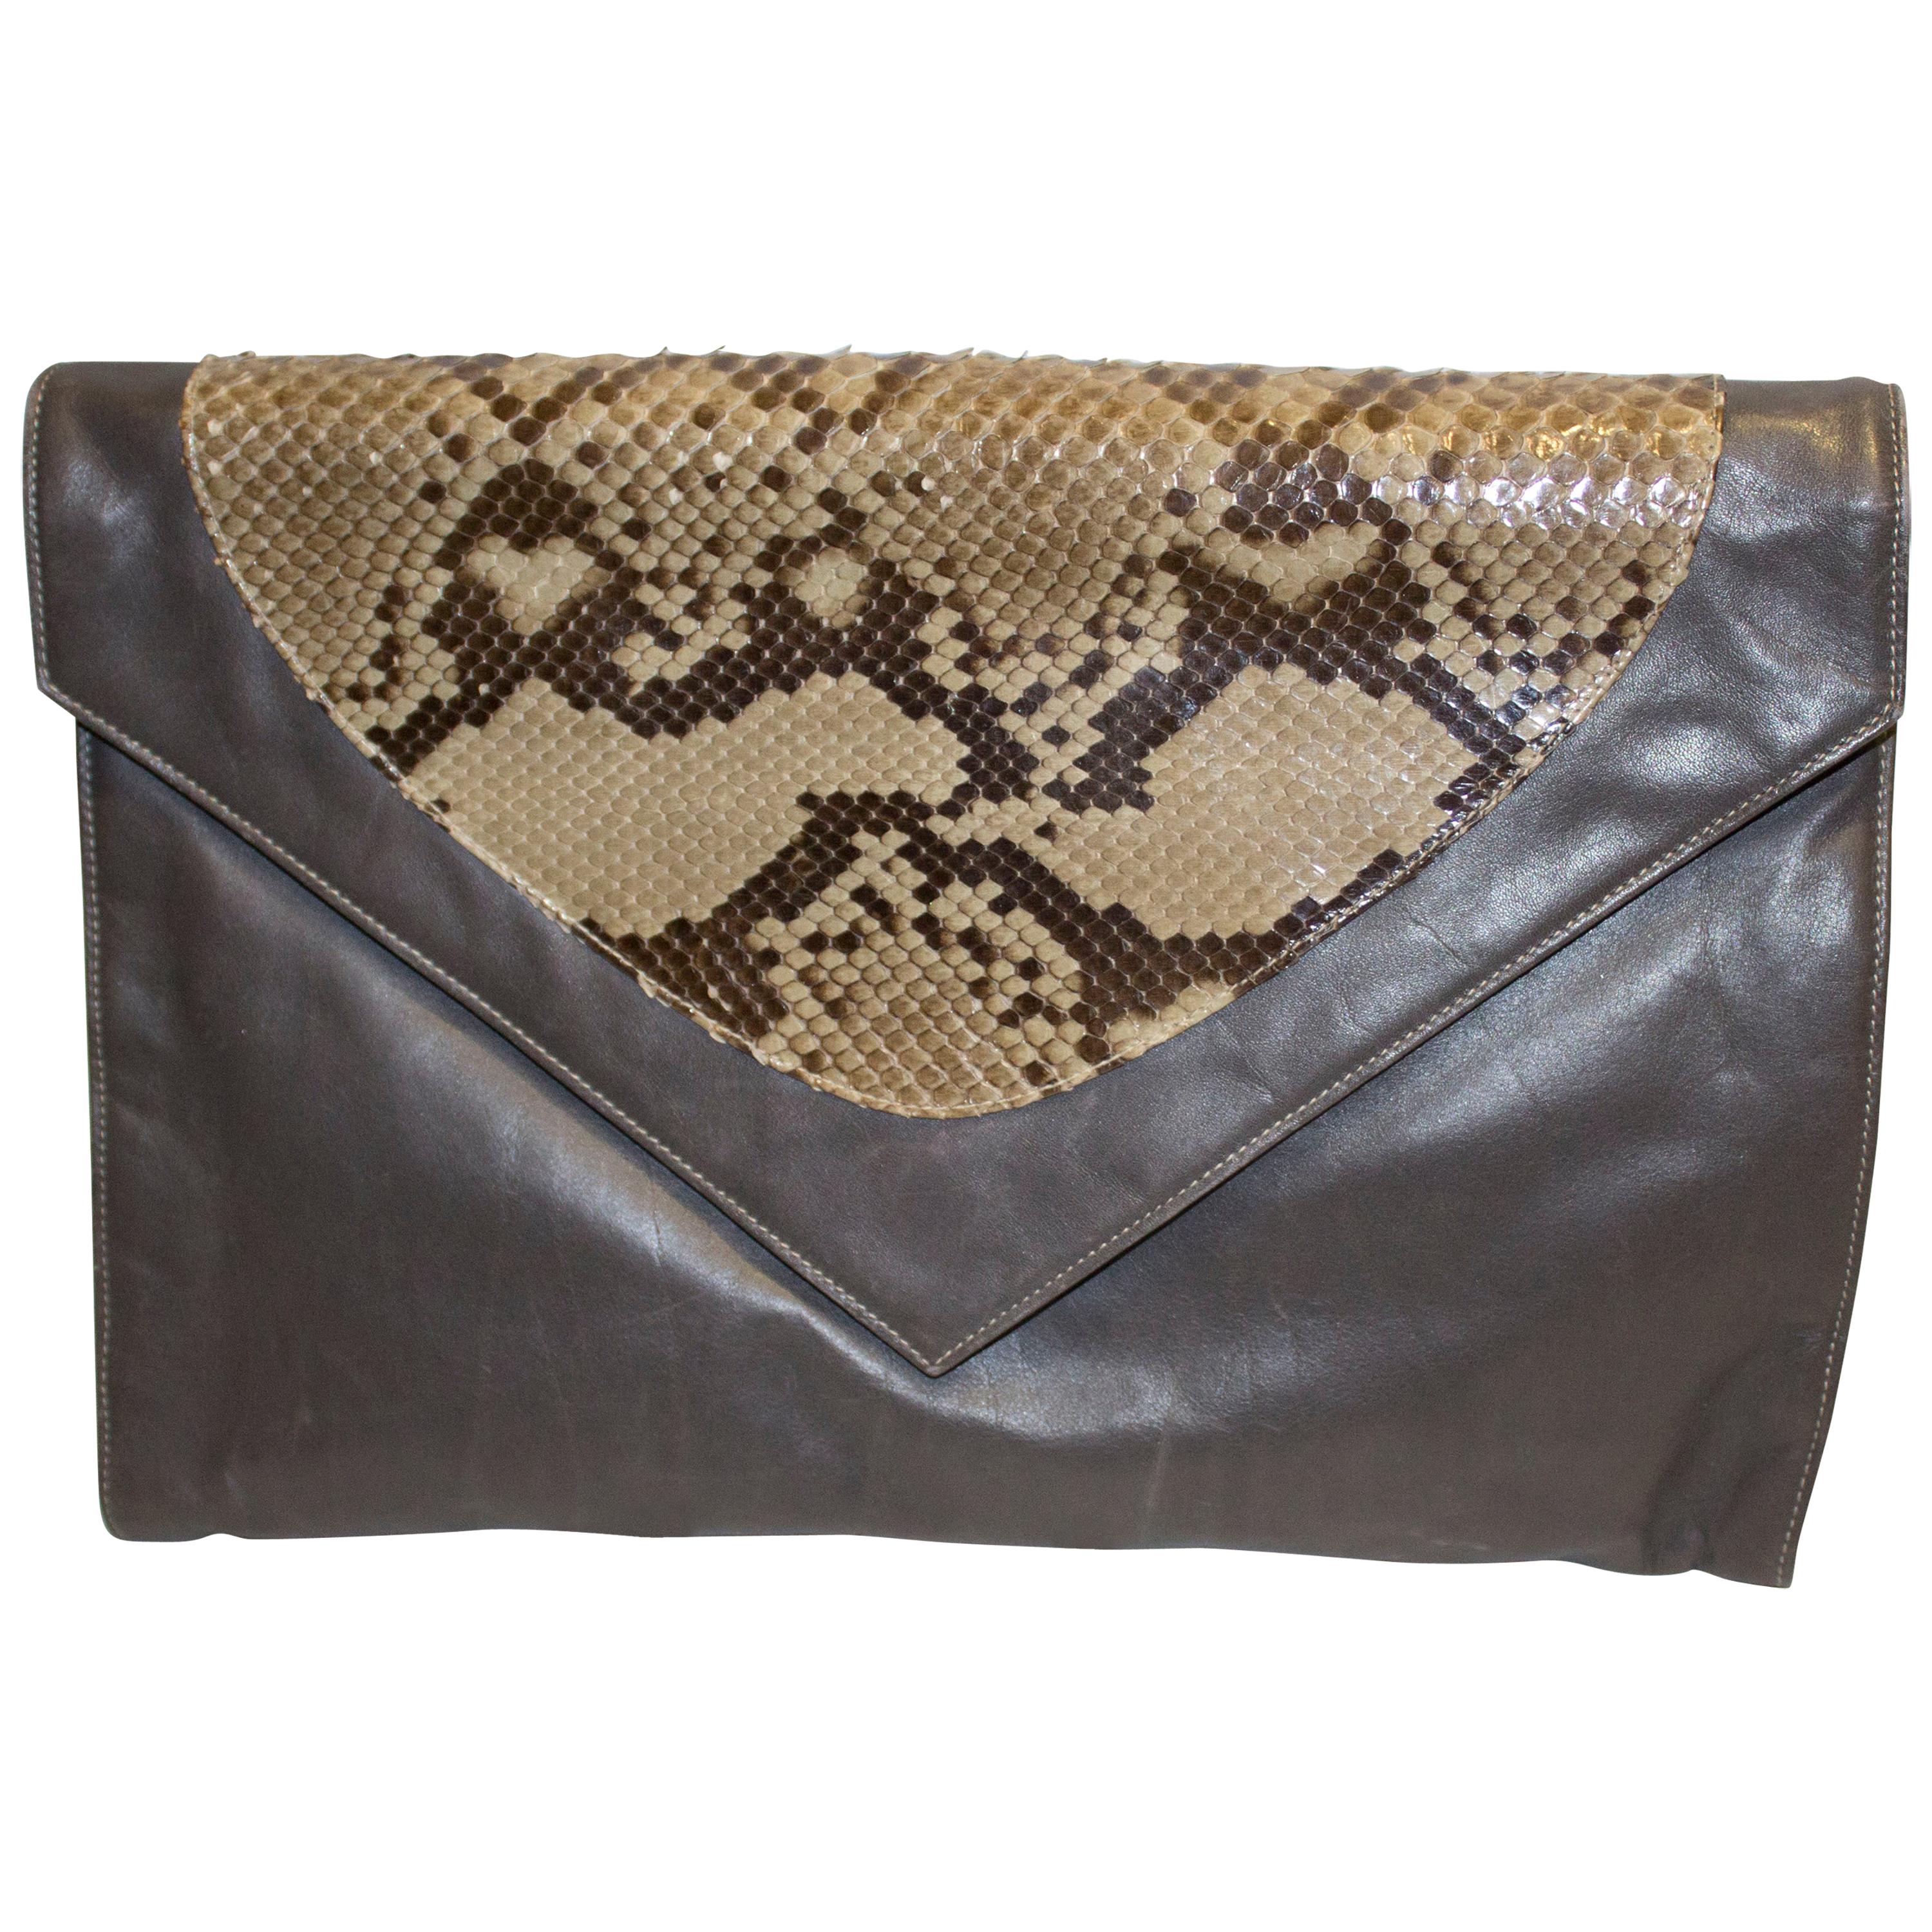 Vintage Aldrovandi Hand Made Leather and Snakeskin Bag - Clutch or Shoulder For Sale